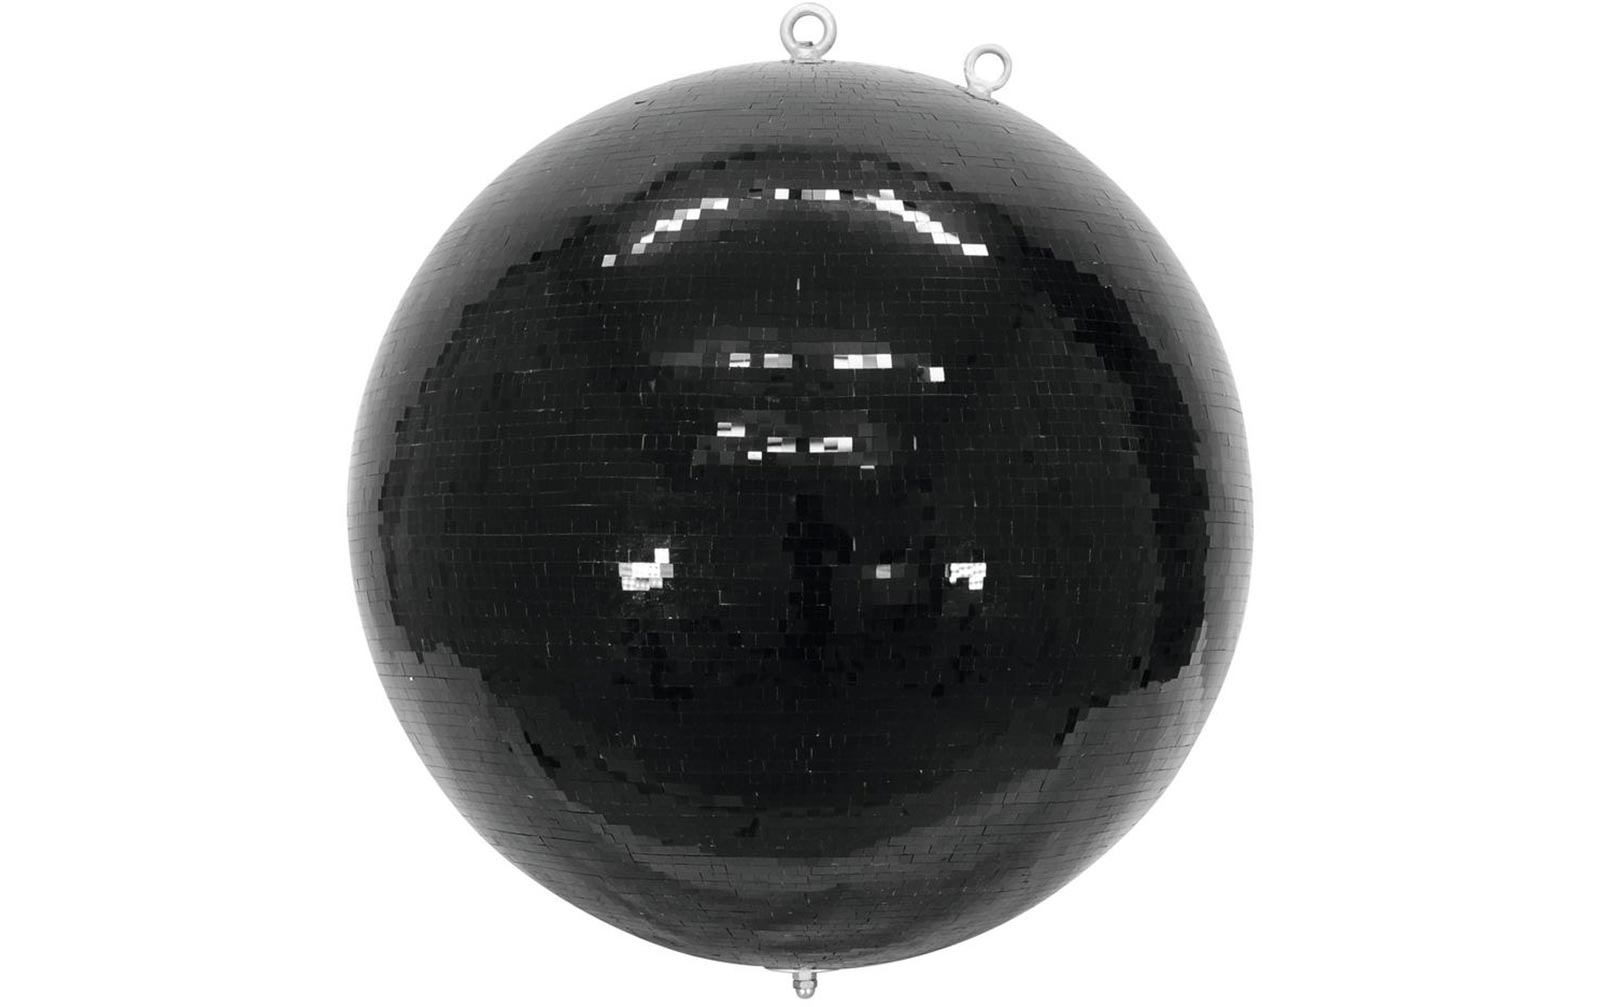 Eurolite Spiegelkugel 100cm schwarz B-Ware von sofort lieferbar, Lieferzeit 1-2 Werktage